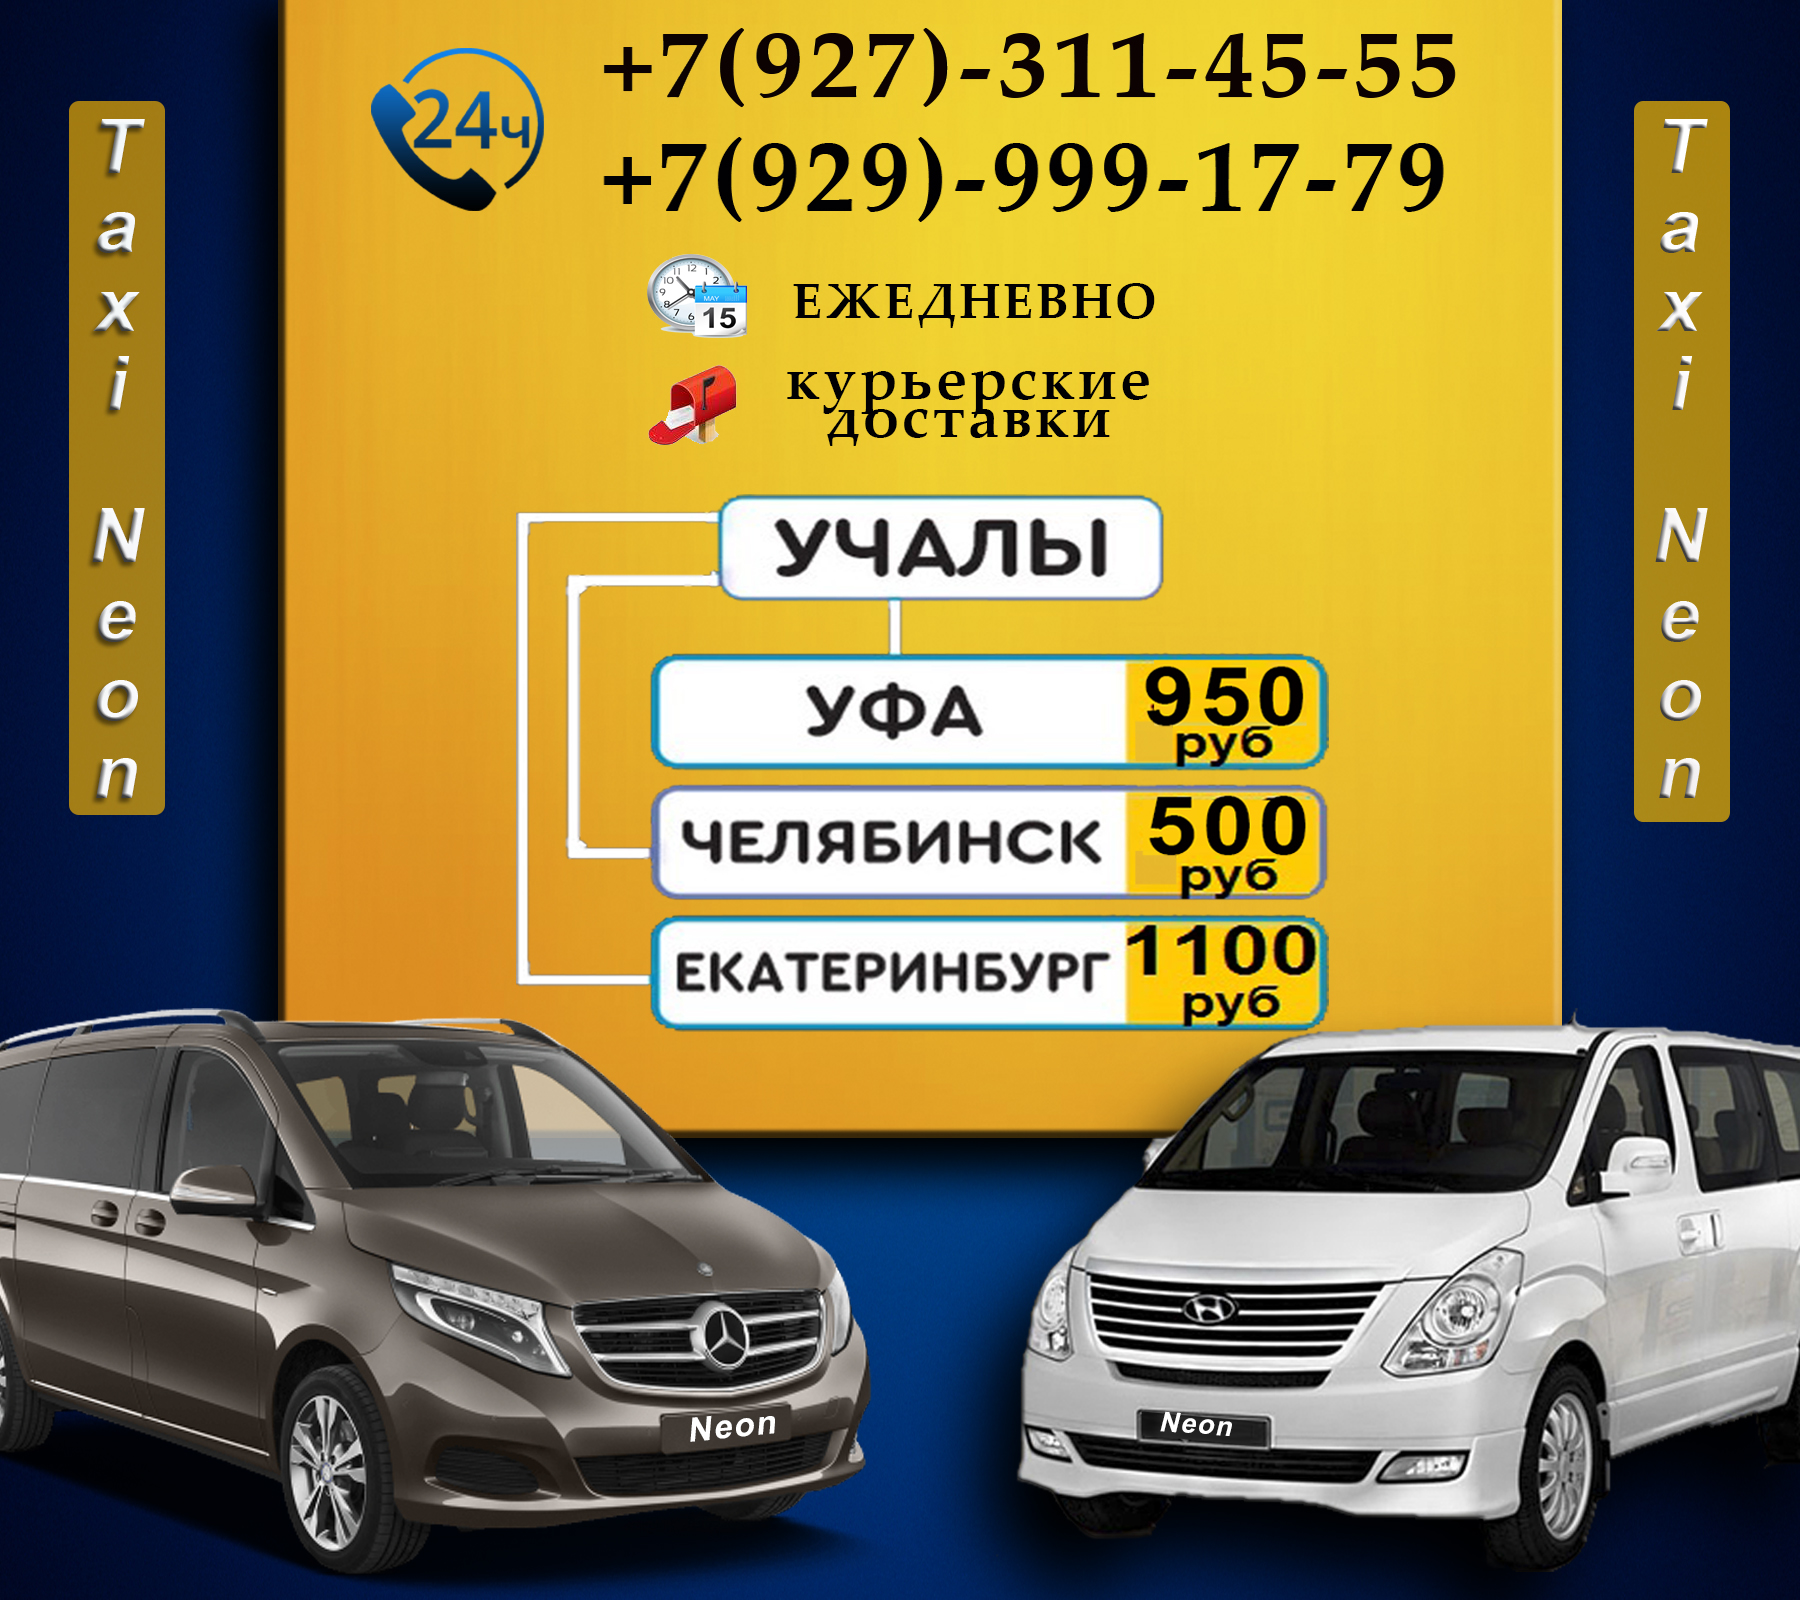 Такси оренбурга телефоны дешевые